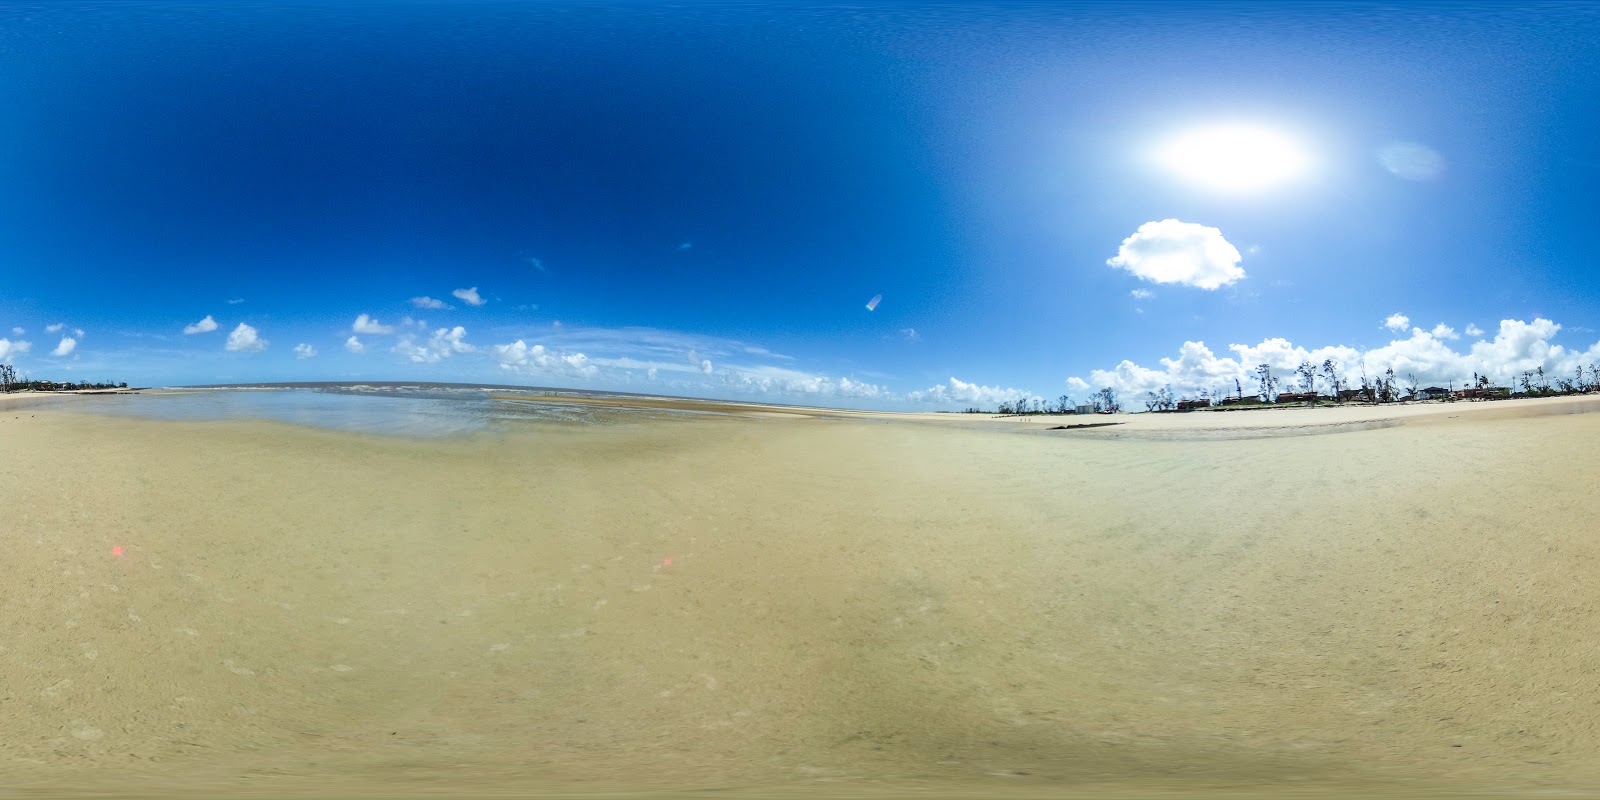 Zdjęcie Beira Beach z powierzchnią turkusowa czysta woda